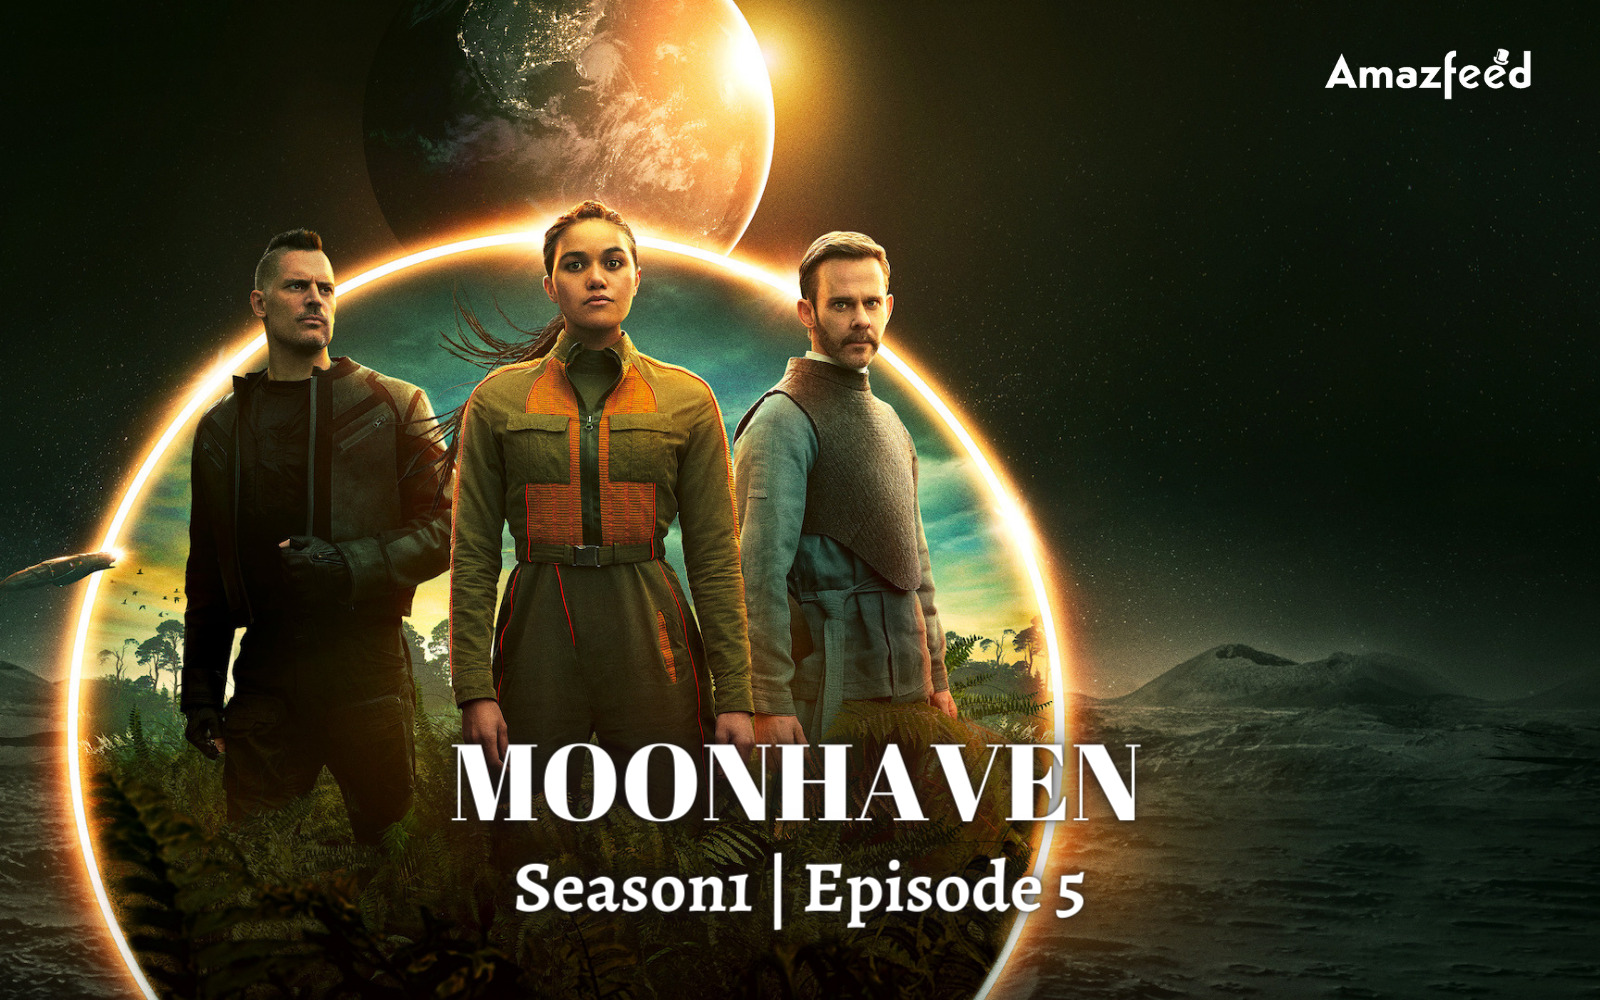 _Moonhaven Season1 Episode 5 Release Date